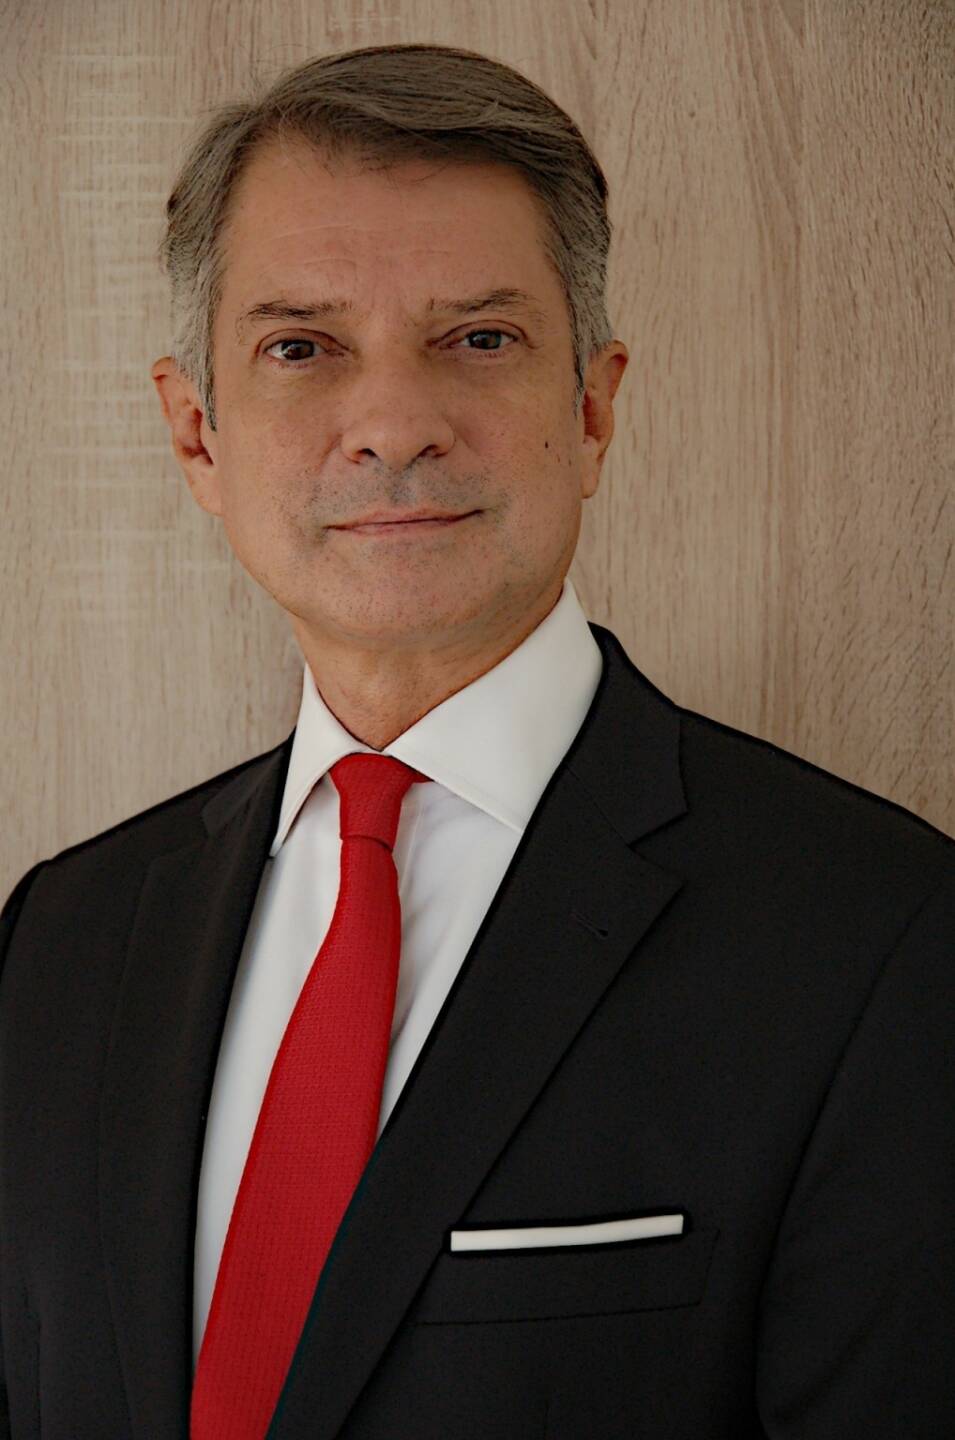 Fabio Fornaroli wird neuer Leiter des Bereichs CEE Corporate & Investment Banking
und Private Banking der UniCredit, Credit: Unicredit